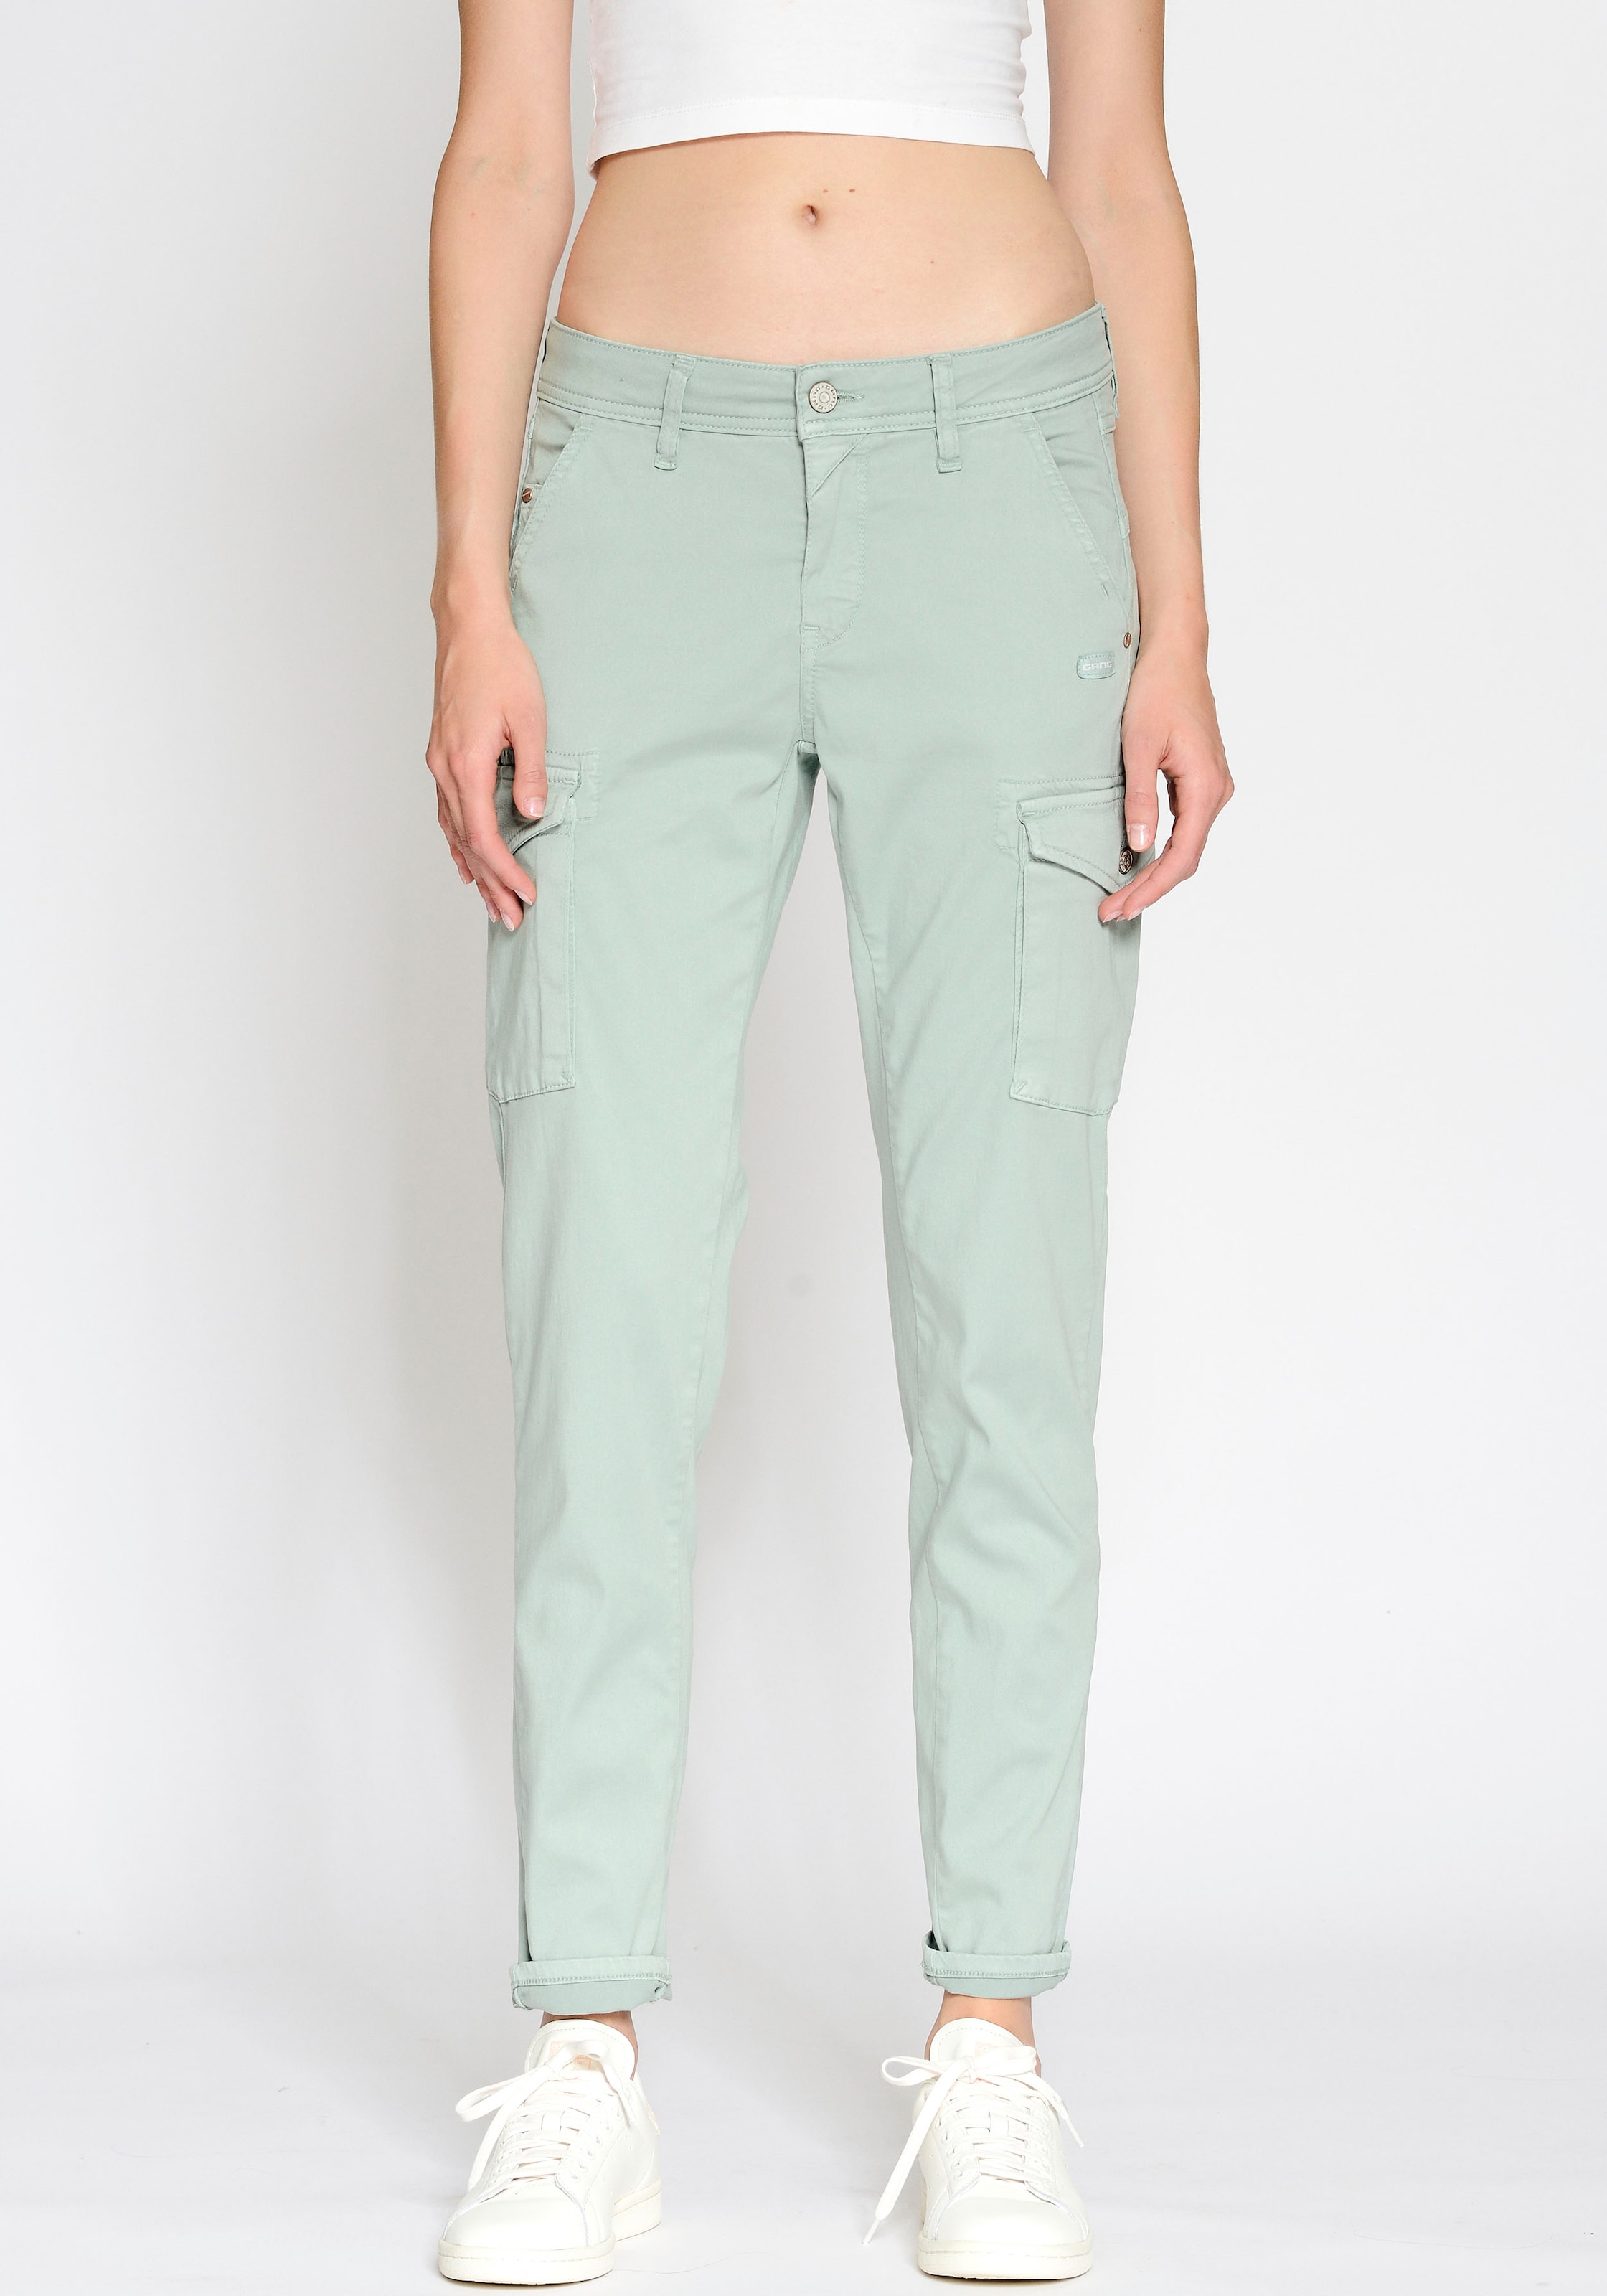 Caprijeans & 3/4 Jeans für Damen - praktisch und bequem